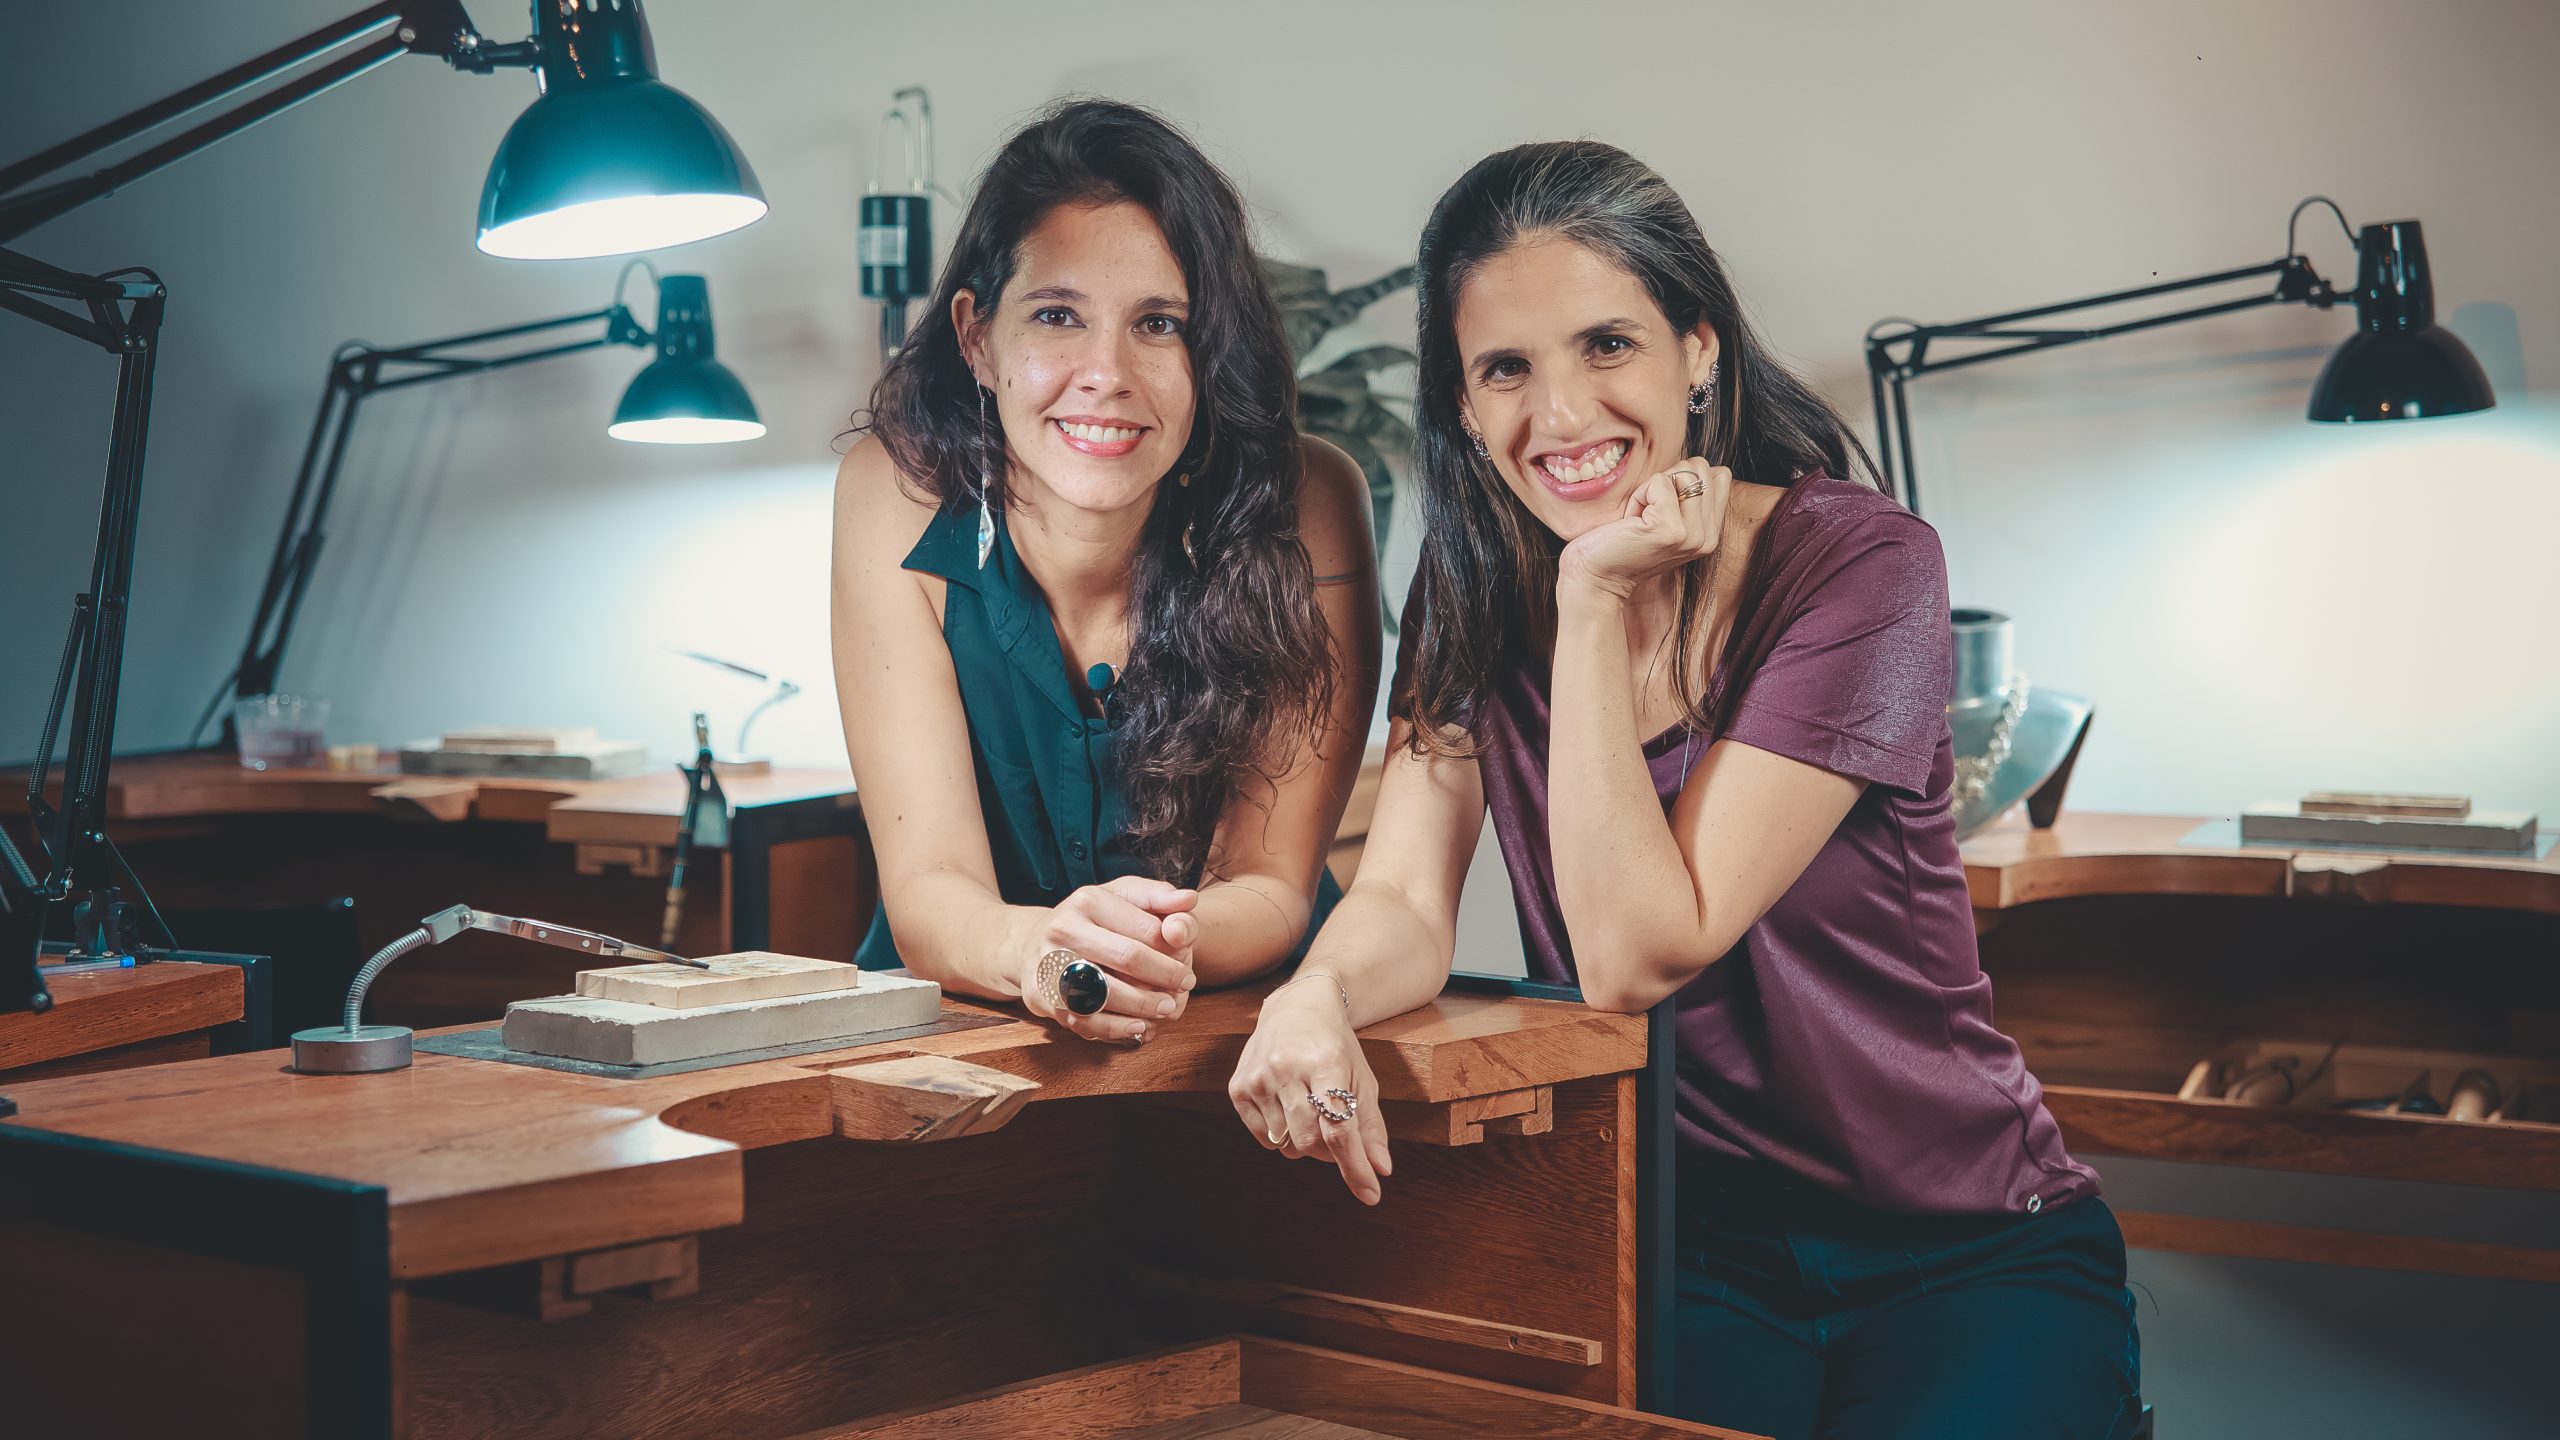 Luiza Hermeto e Fernanda Salomão são idealizadoras do Criadouro e têm marcas próprias de joias - Crédito: Arquivo Pessoal